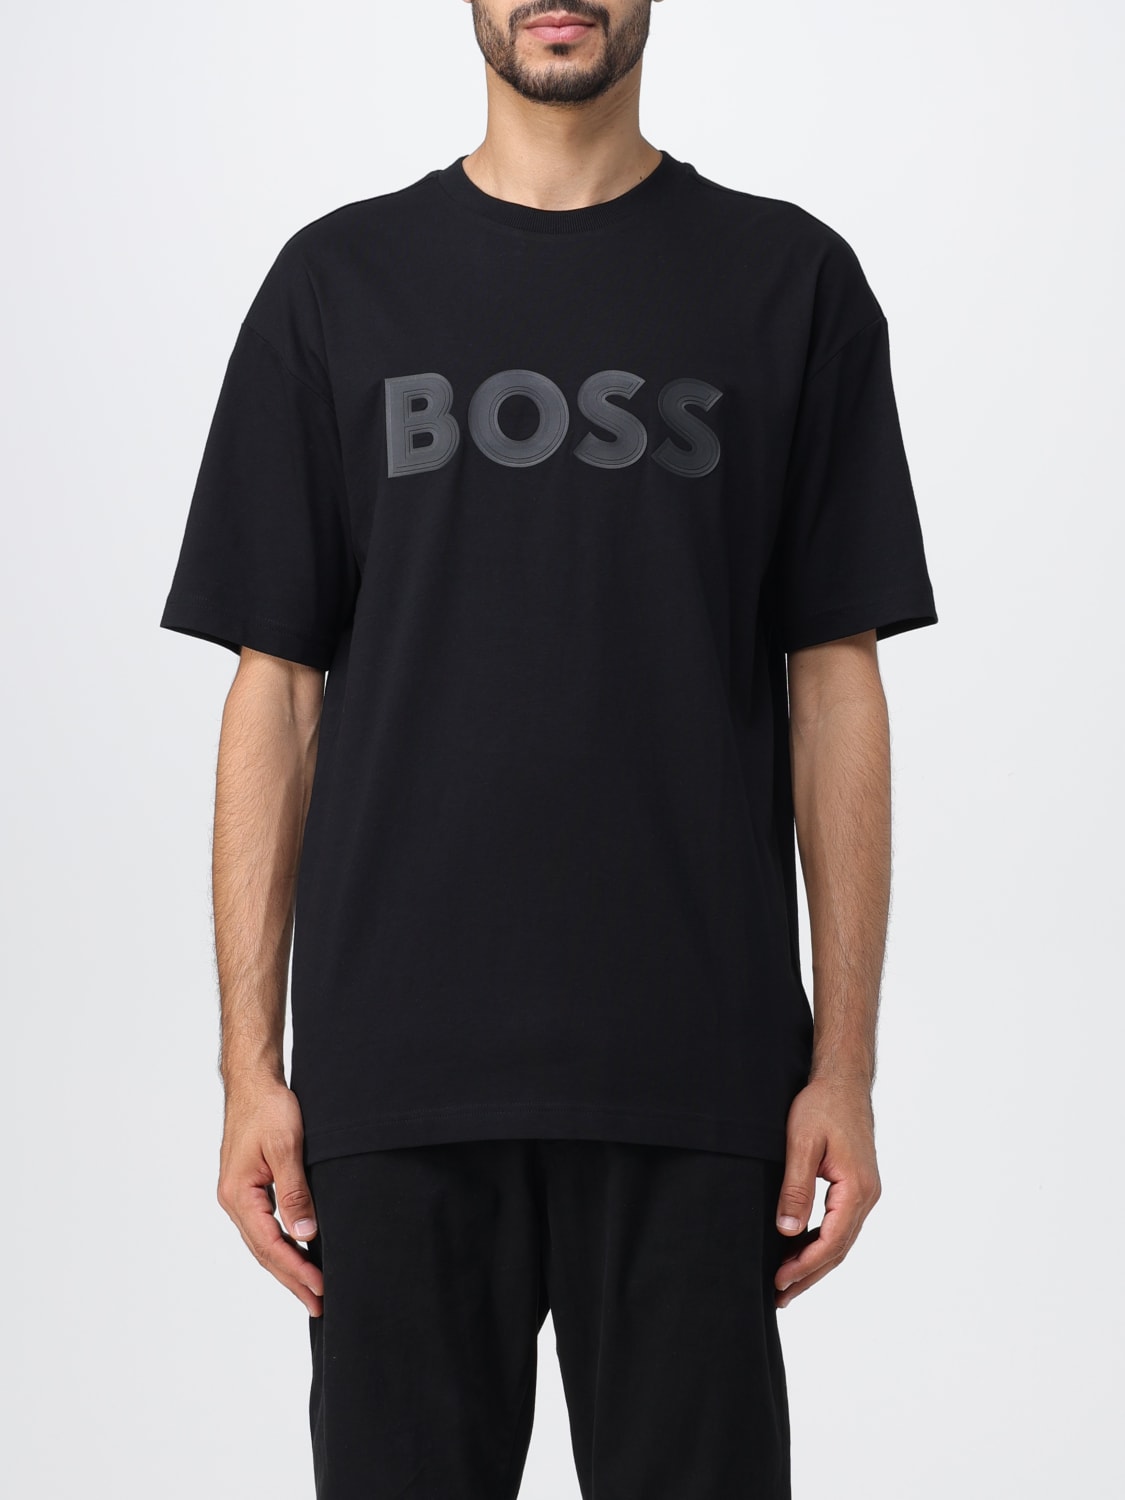 BOSS: t-shirt for men - Black | Boss t-shirt 50501232 online at